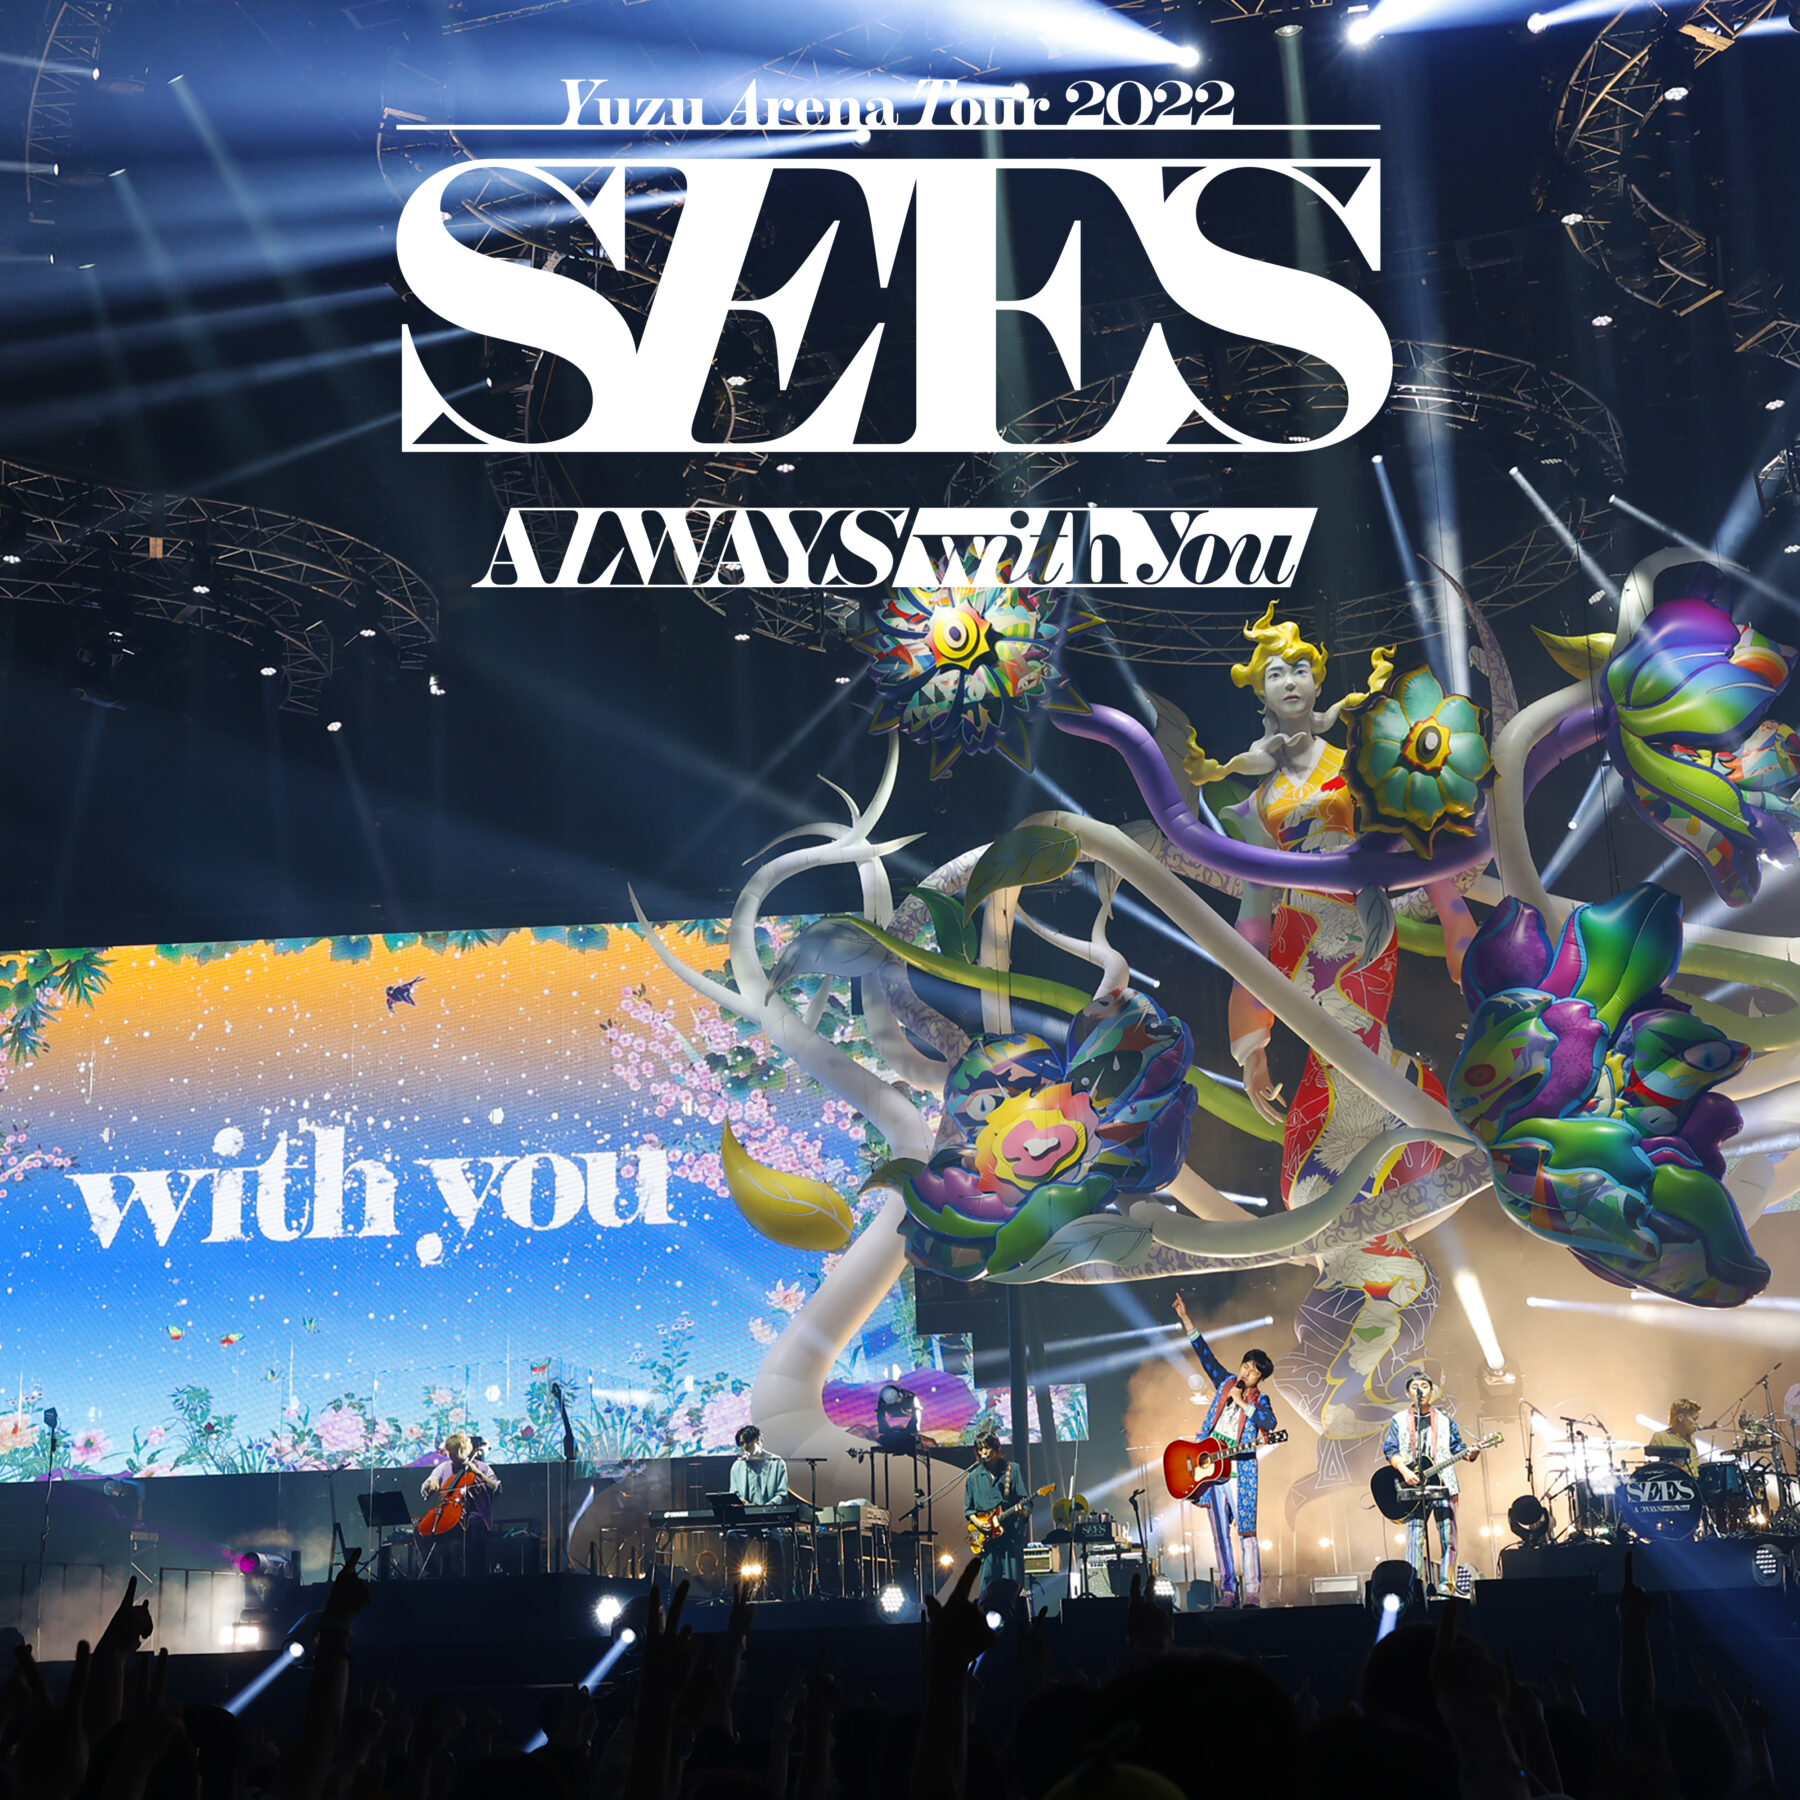 ライブアルバム『YUZU ARENA TOUR 2022 SEES -ALWAYS with you-』ジャケット